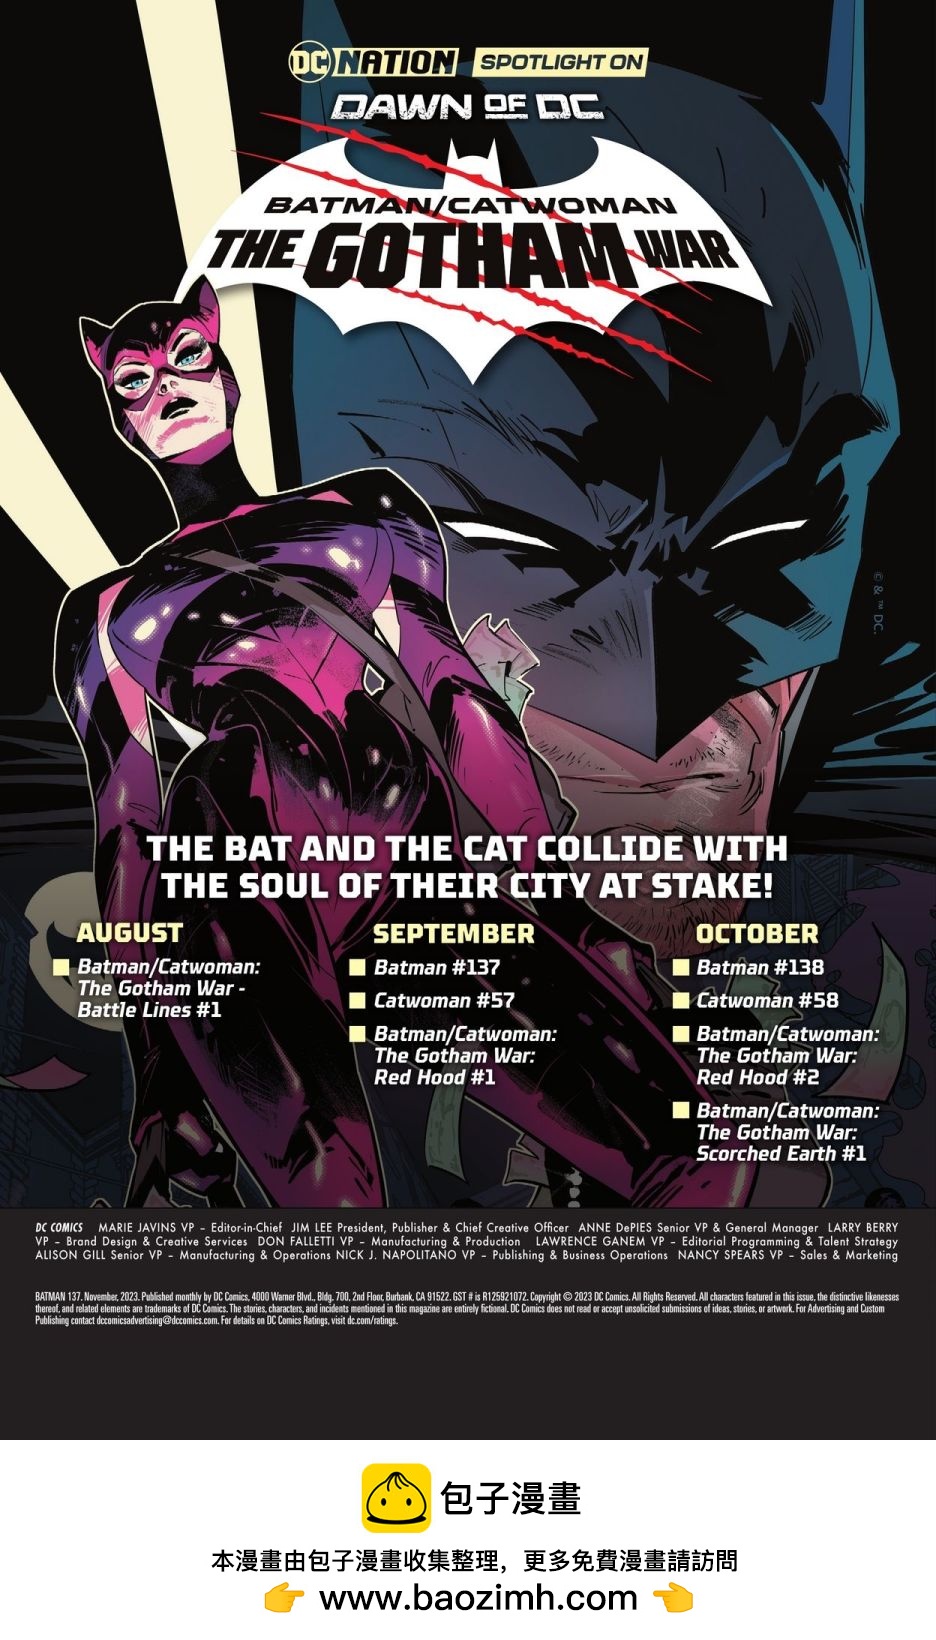 蝙蝠俠/貓女-哥譚戰爭 - 蝙蝠俠V3#137 - 4